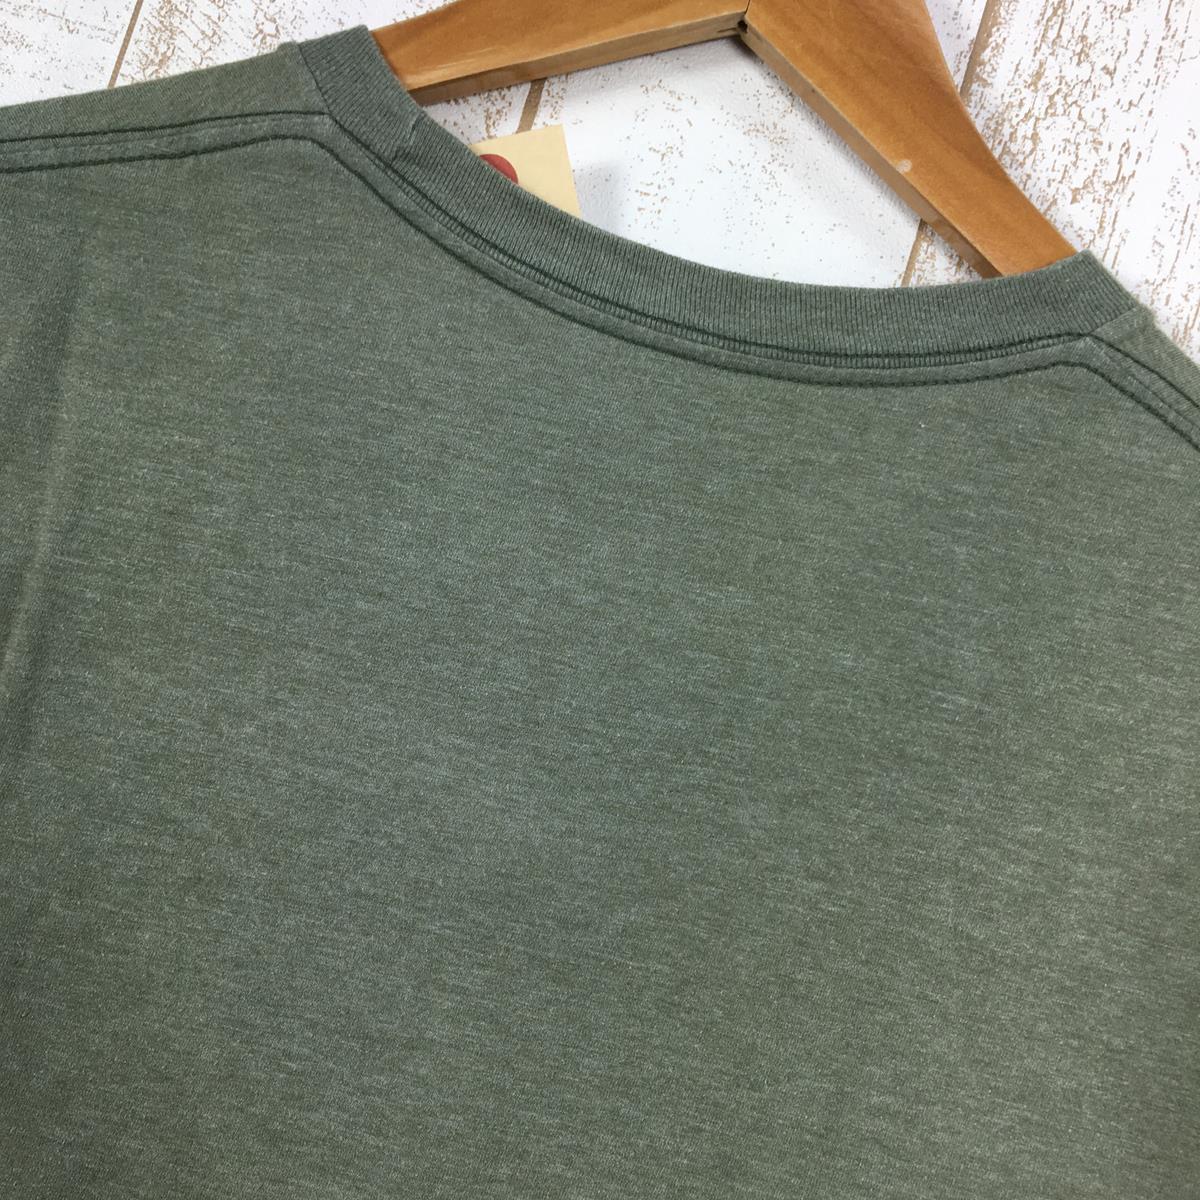 【MEN's M】 パタゴニア ボードショーツ ラベル コットンポリ ポケット Tシャツ Board Short Label Cotton/Poly Pocket T-Shirt 生産終了モデル 入手困難 PATAGONIA 39053 グリーン系